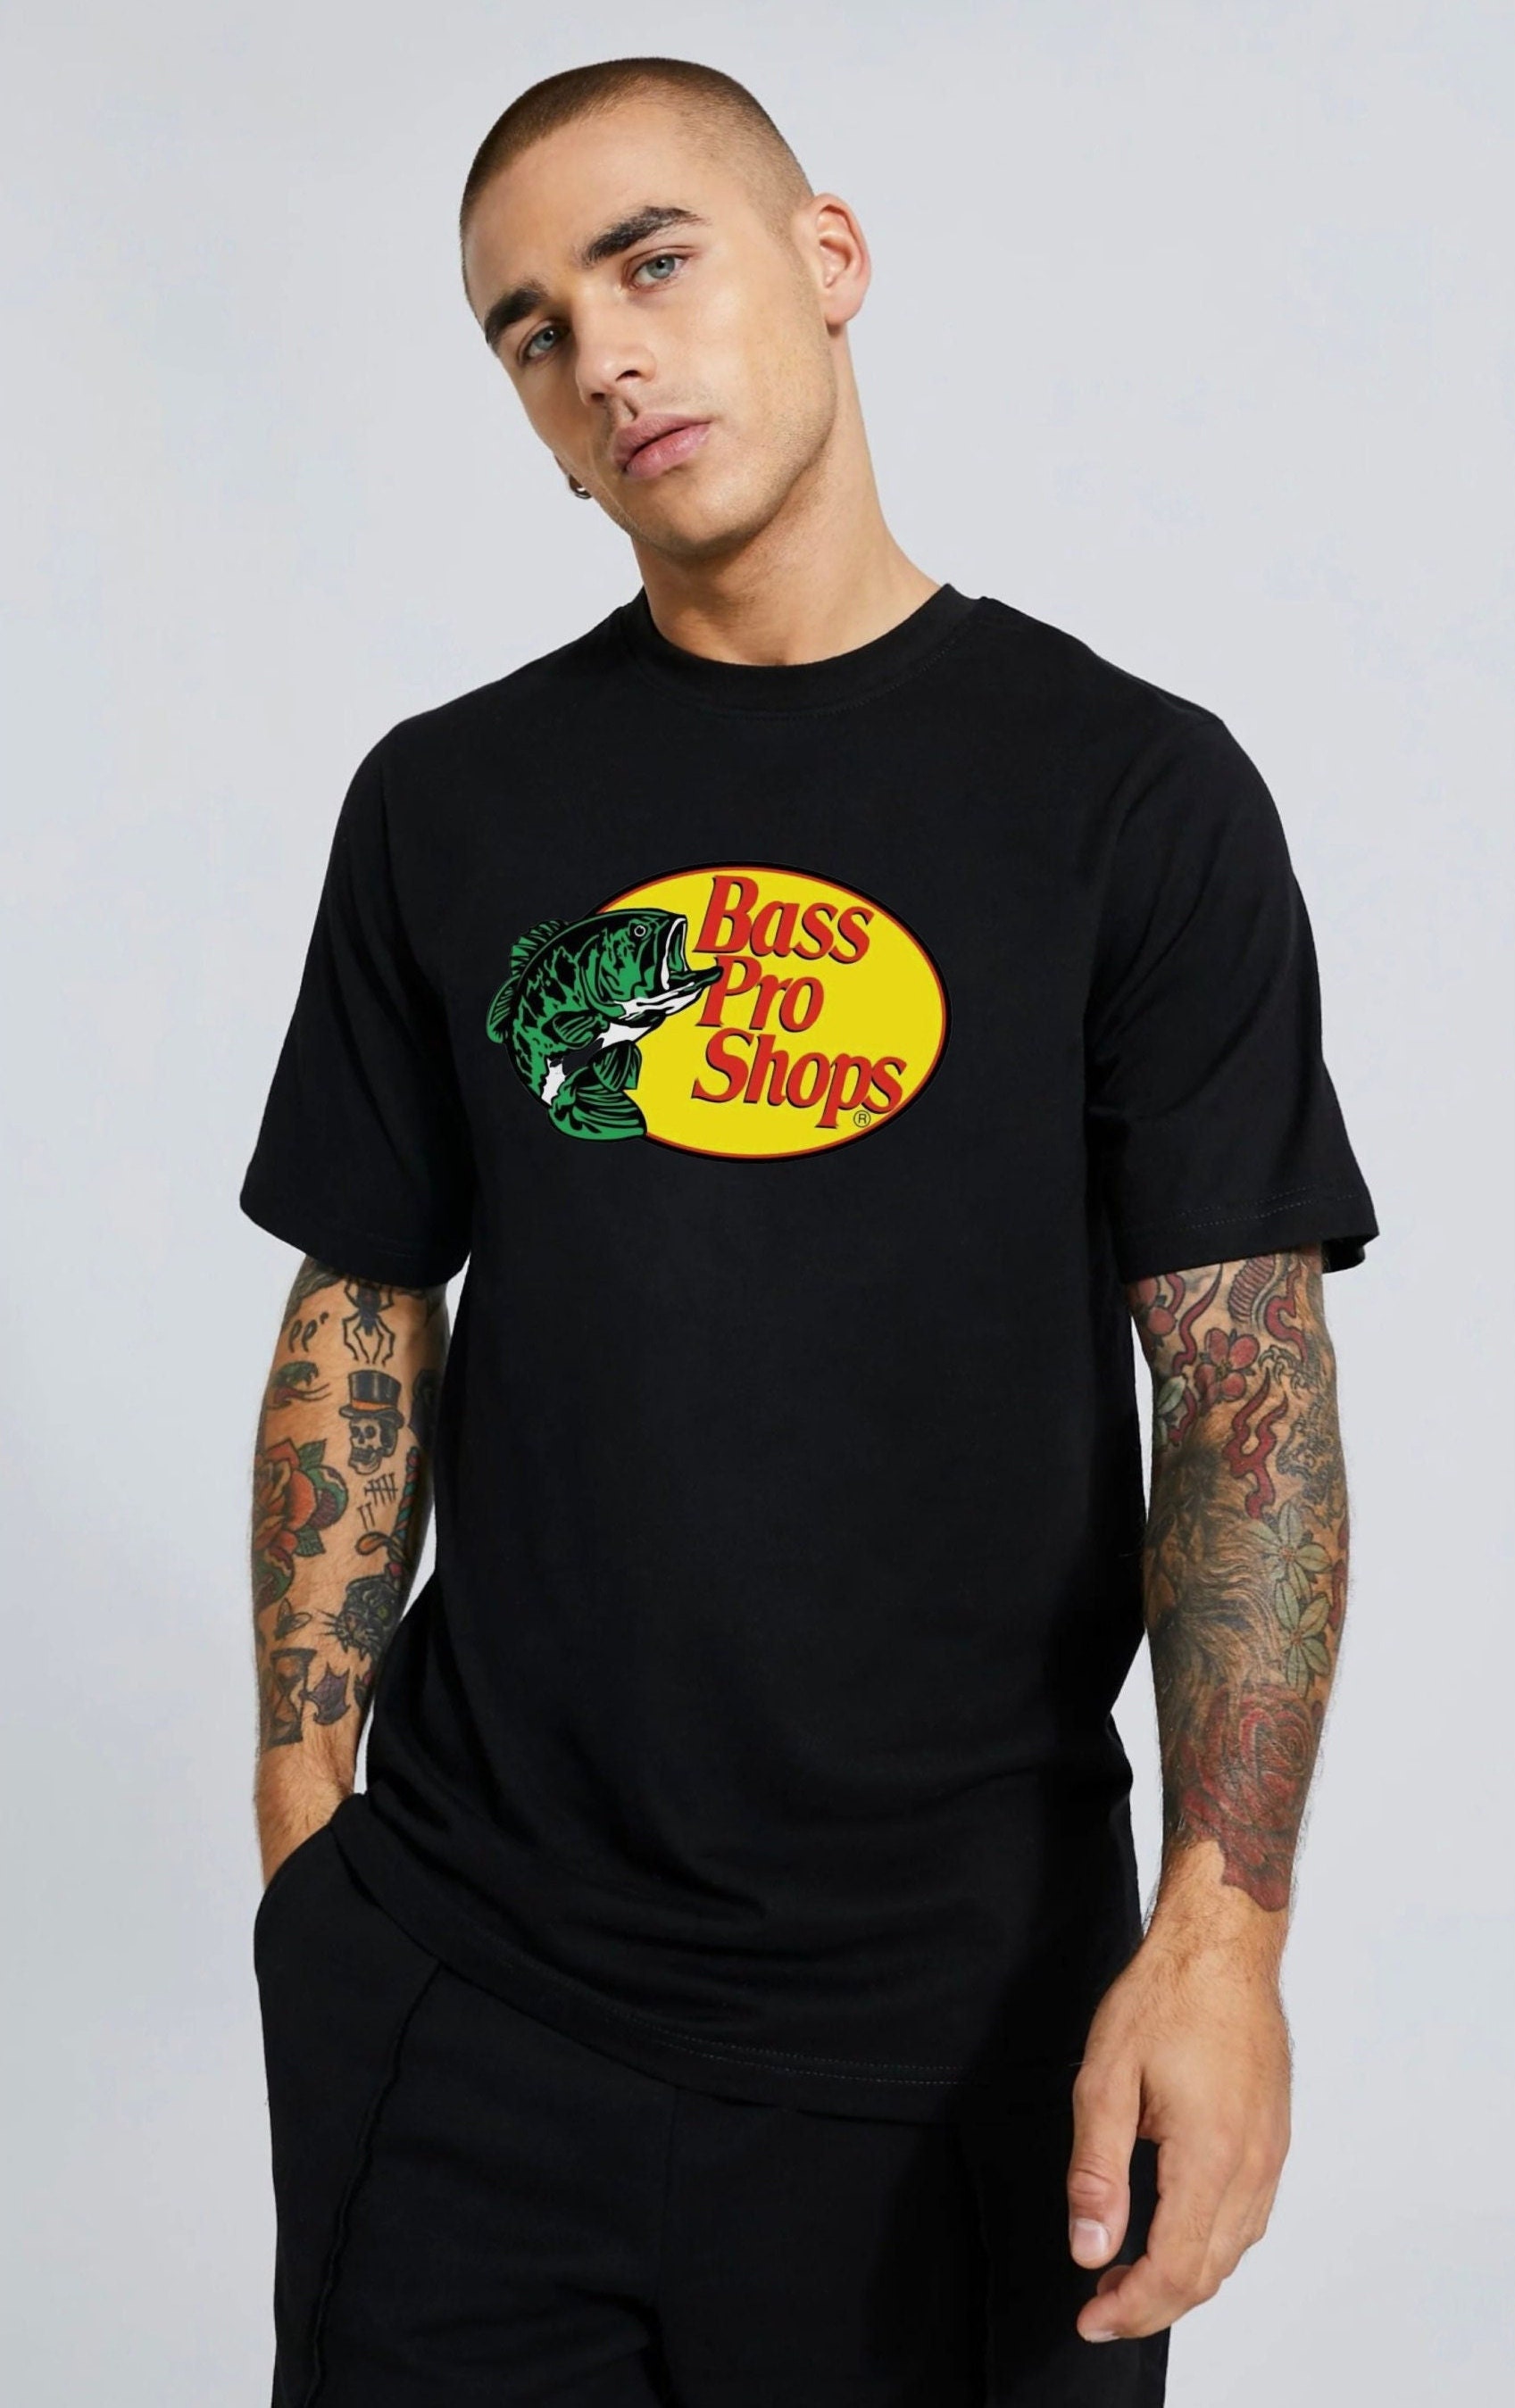 Bass pro shops t-shirt.T-shirt for men. T-shirt for women. summer t-shirt. perfect for a gift